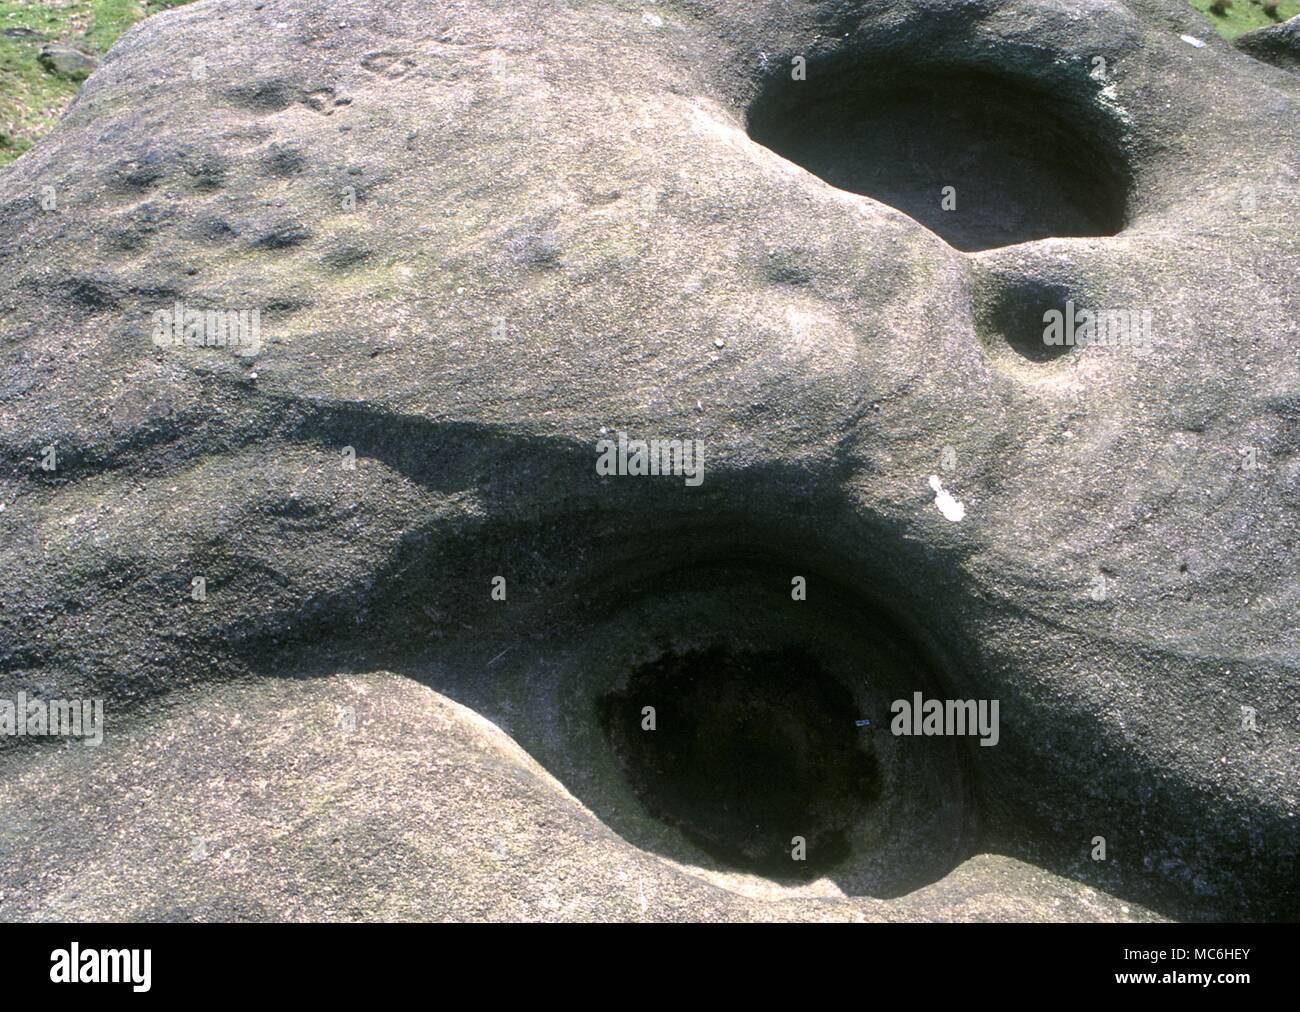 Ley linee. Il duplicatore pietre sulla Ilkley Moor, Yorkshire. Queste pietre sono state un luogo sacro in epoca preistorica e parte di un esteso ley. Segni preistorici e manufatti di fori per l'acqua Foto Stock